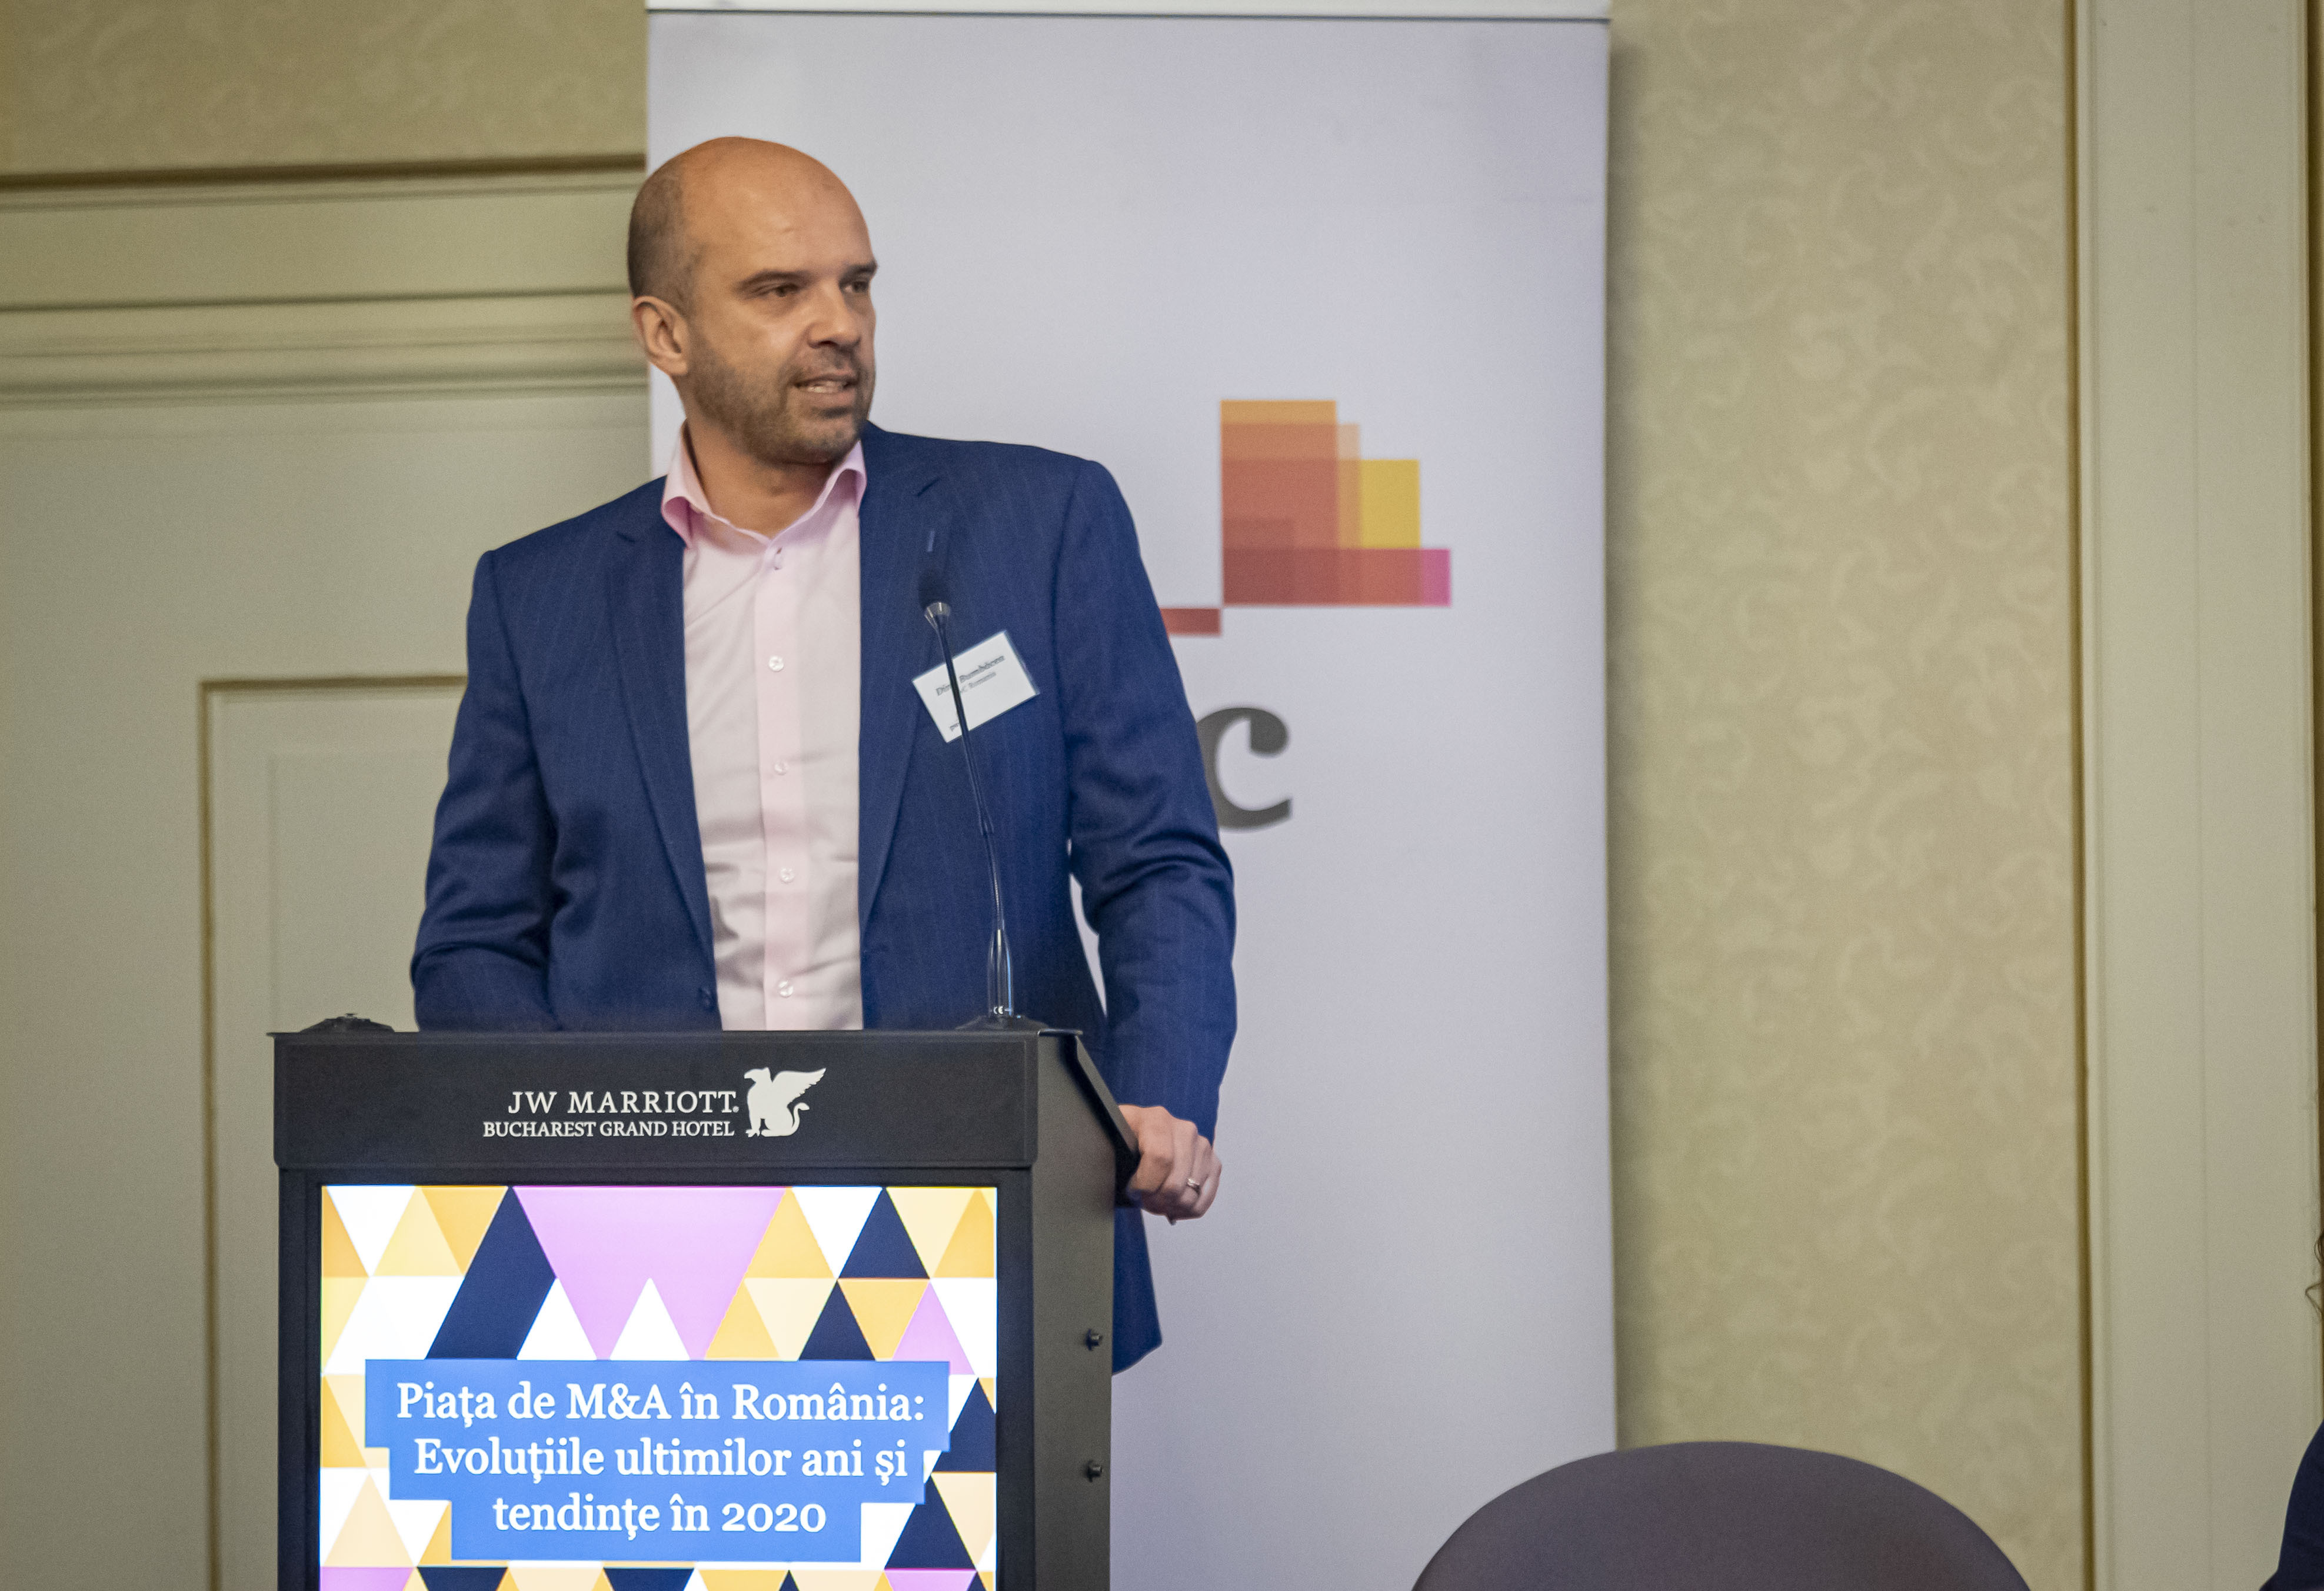 Dinu Bumbăcea, Partener PwC România: Tehnologia este esenţială în adaptarea companiilor la schimbări, dar planificarea şi talentele fac diferenţa